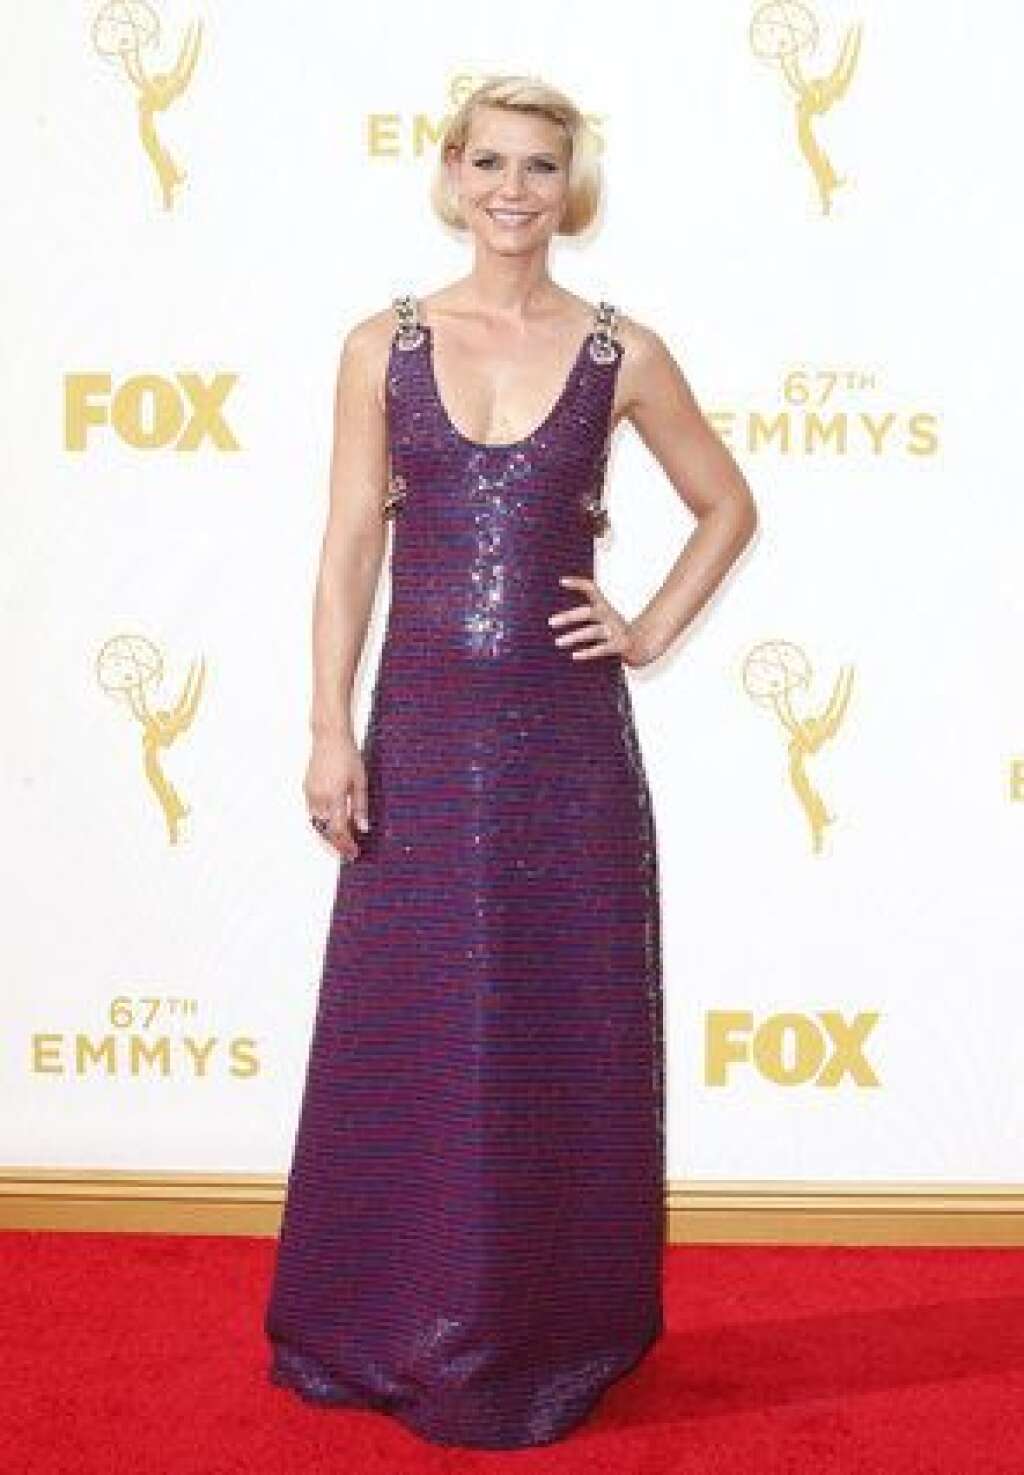 La 67ème cérémonie des Emmy Awards - Claire Danes (Homeland) dans une robe Prada à la cérémonie des Emmy Awards